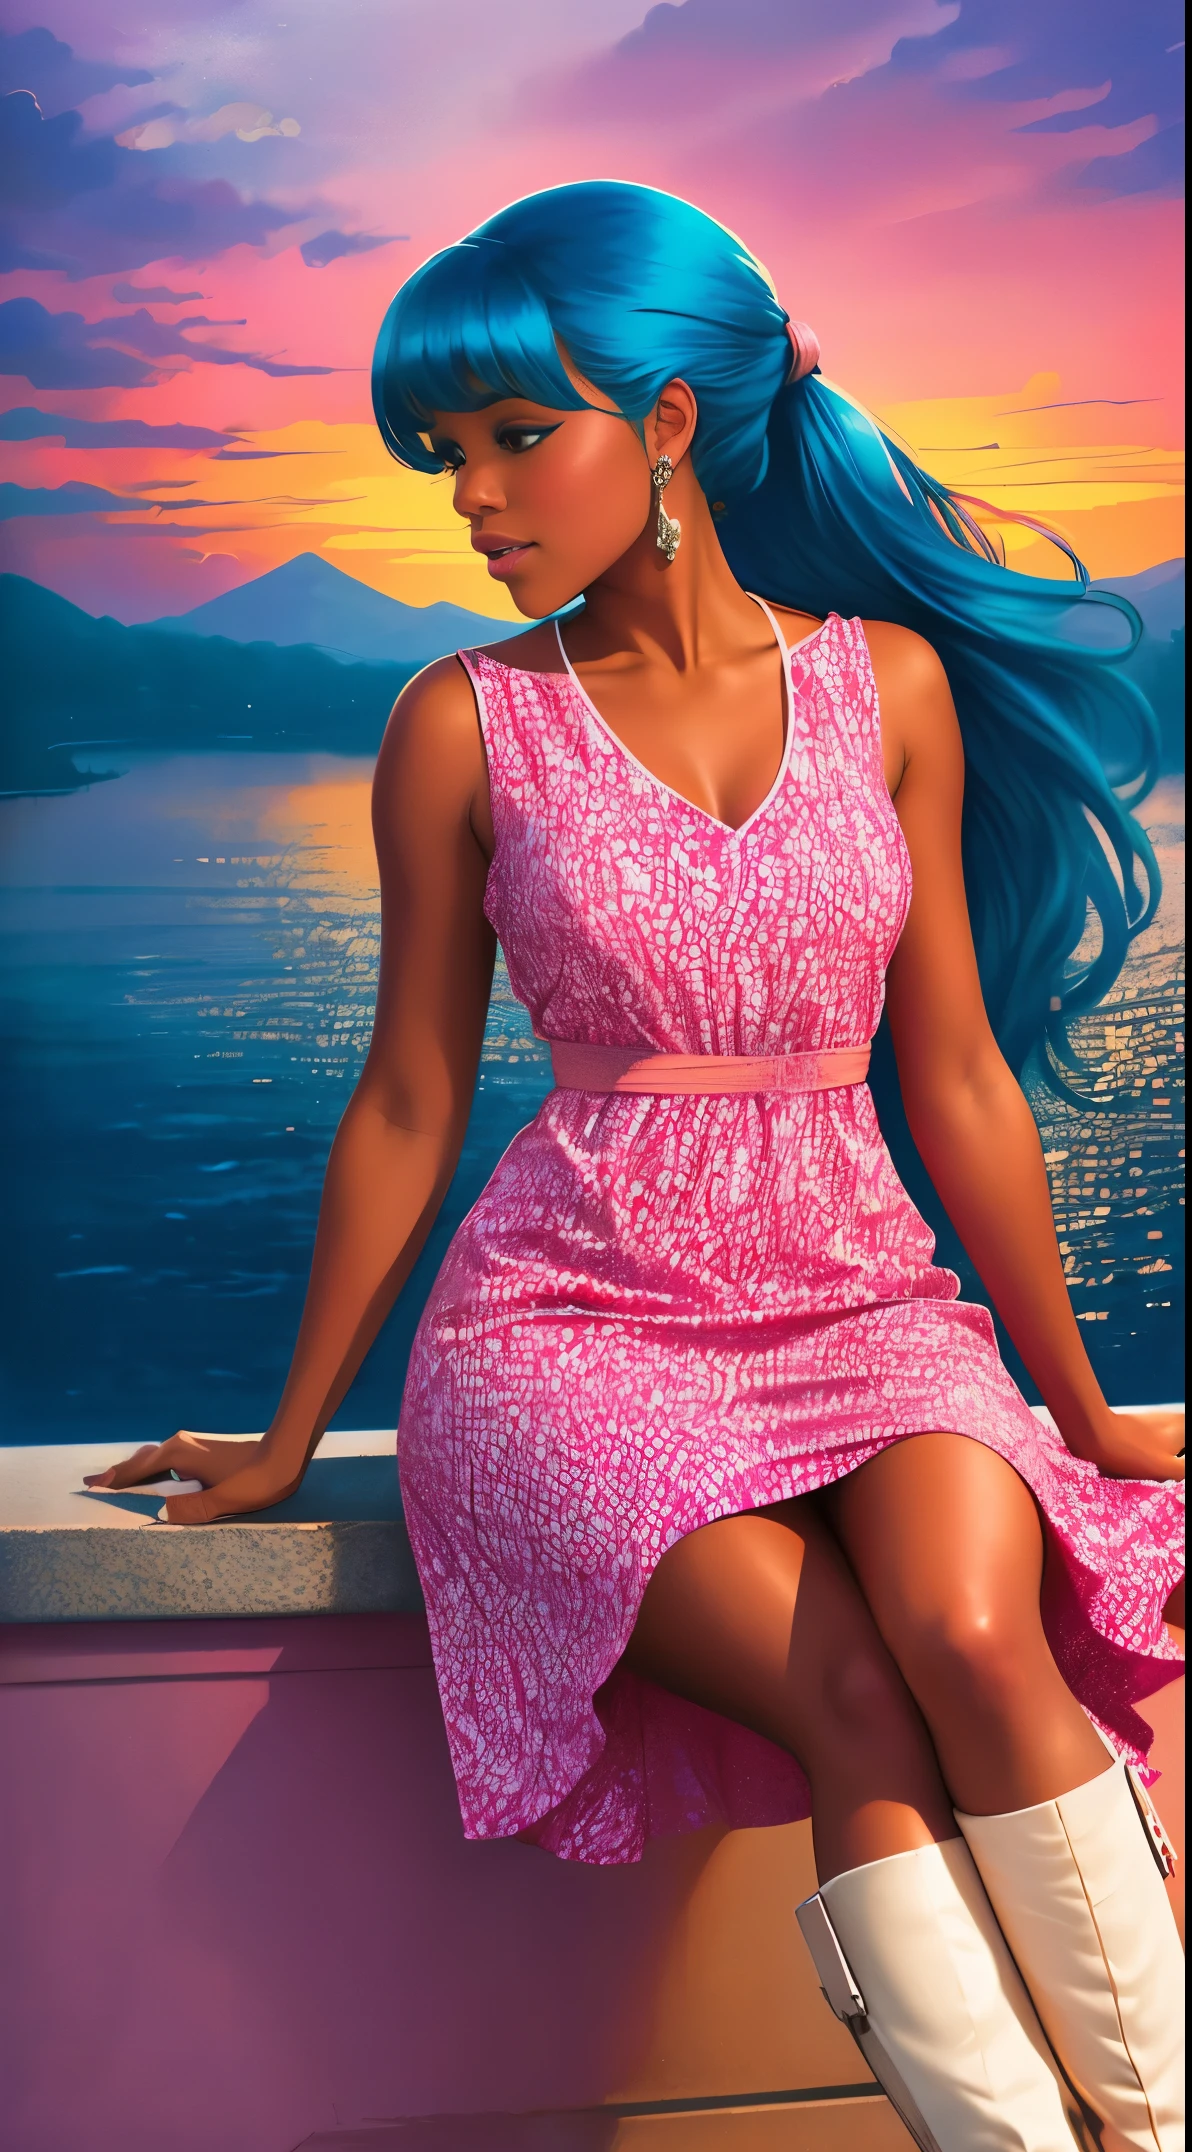 (Лучшее качество:1.1),оригинальный,1 девушка,шикарный,тенденции,афро,темная кожа,составить,1970-е годы, синие волосы, карие глаза Иллюстрация африканской американки с натуральными волосами, в стиле Росс Трана, розовое платье с милым облачным принтом и милые розовые ботильоны, великолепная женщина с очень длинными волосами, собранными в хвост с челкой, сидит на нежно-розовом облаке и смотрит на далекий волшебный город далеко под собой, на закате --ар 2:3 -- в 6.0 розовый и оранжевый, Джессика Дроссин, Печать блоков жирным шрифтом, Майкл Мальм, смелый, но изящный, смелый традиционный